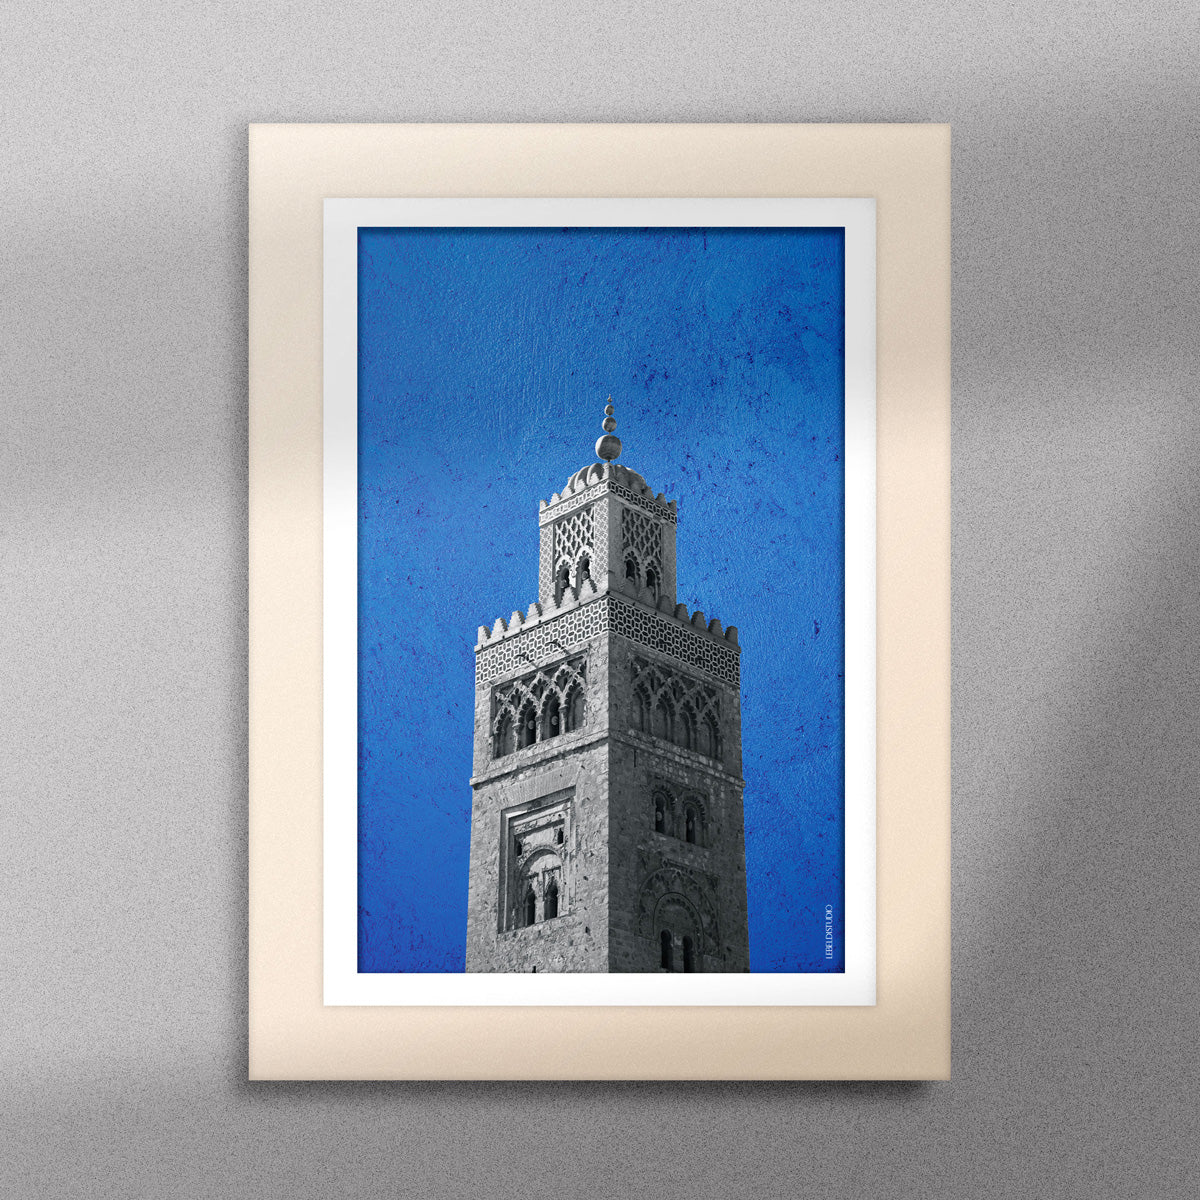 Tableau décoratif représentant la Koutoubia de Marrakech sur un fond bleu, encadré dans un cadre en bois - Format A5.